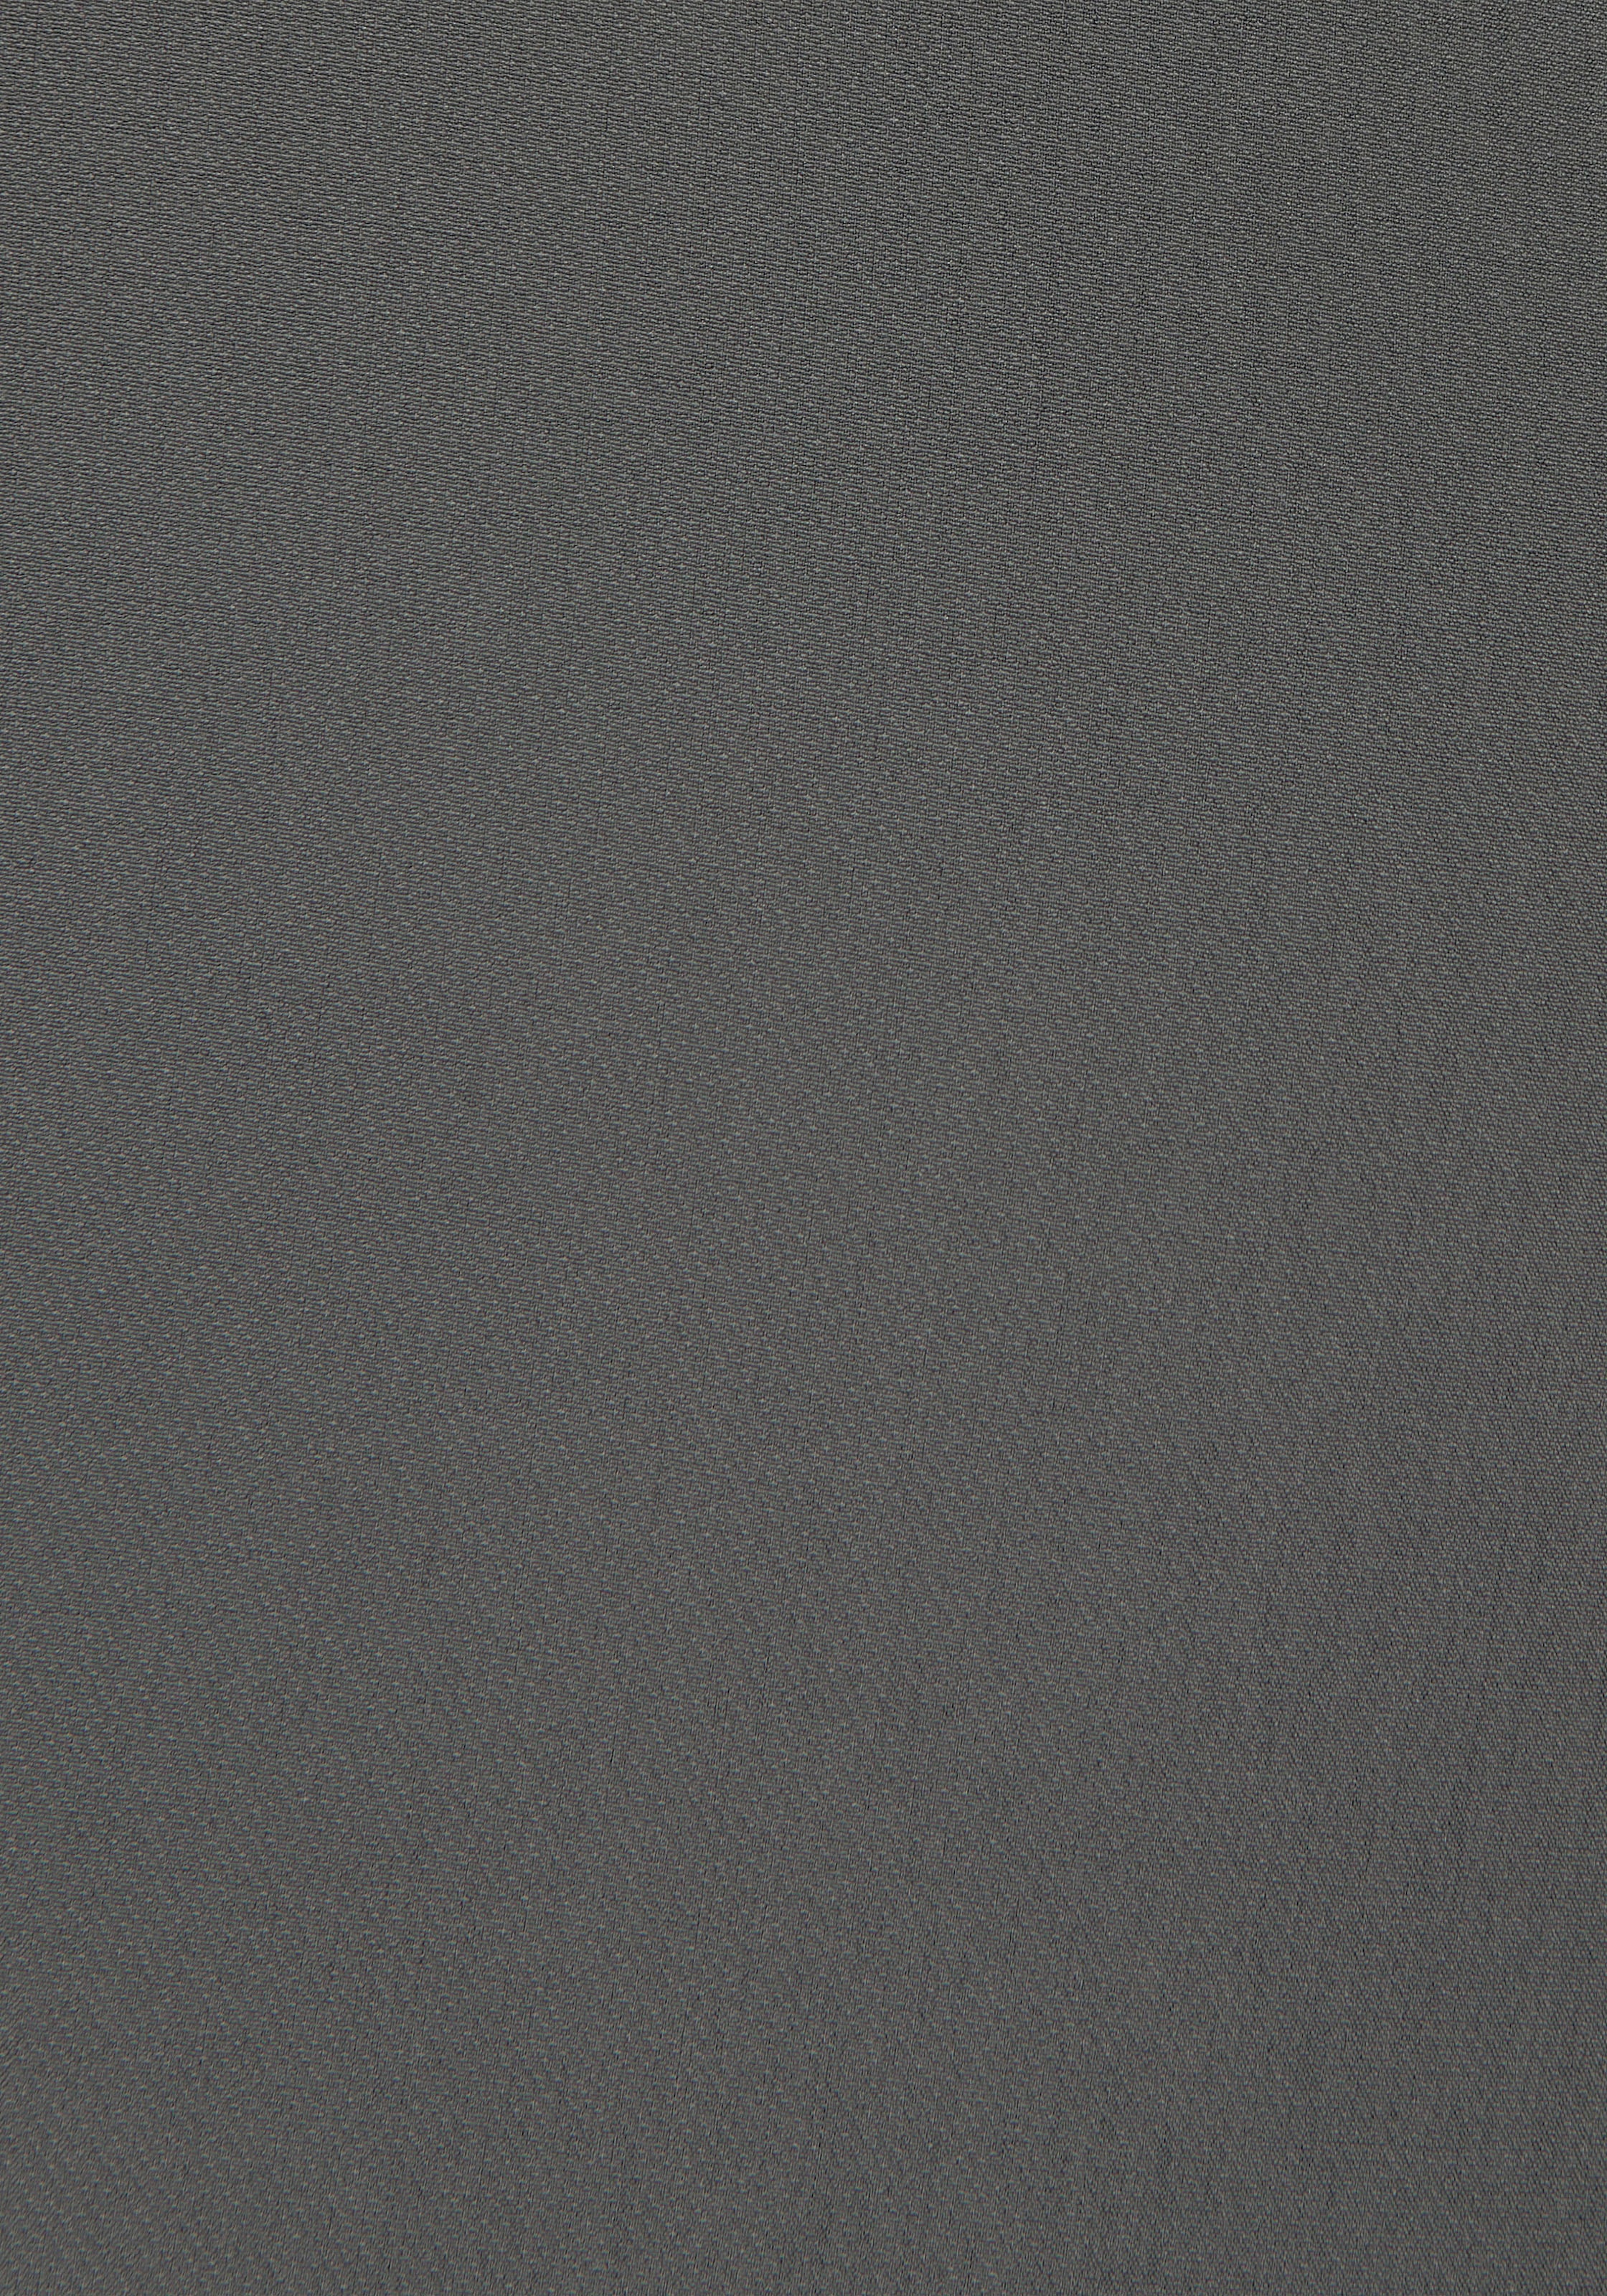 LASCANA Bügelfaltenhose, in 7/8-Länge, elegante Anzughose mit Taschen, schmale Stoffhose